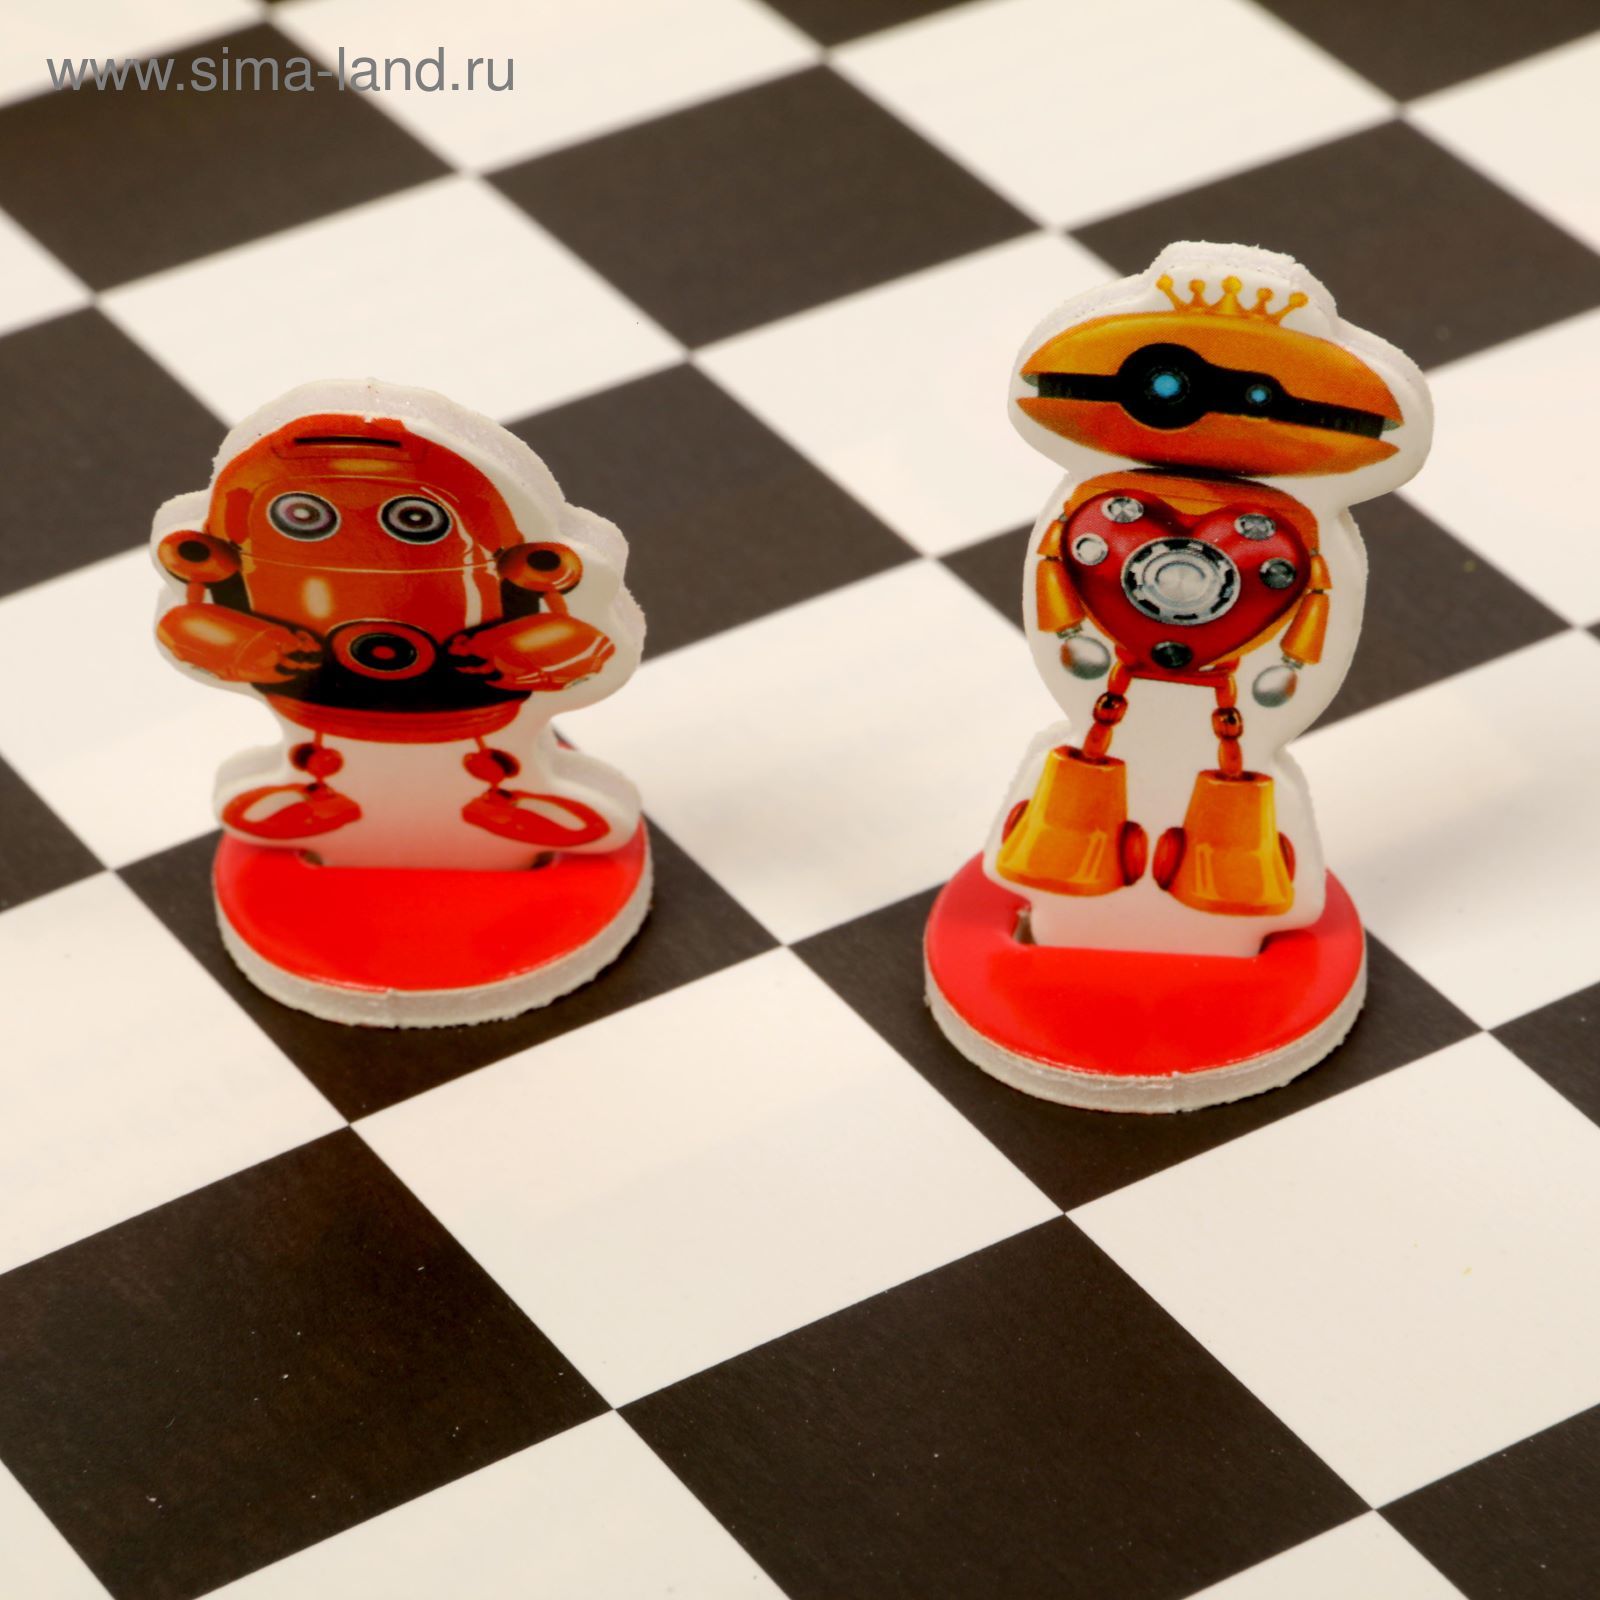 Шахматы детские "В мире роботов"